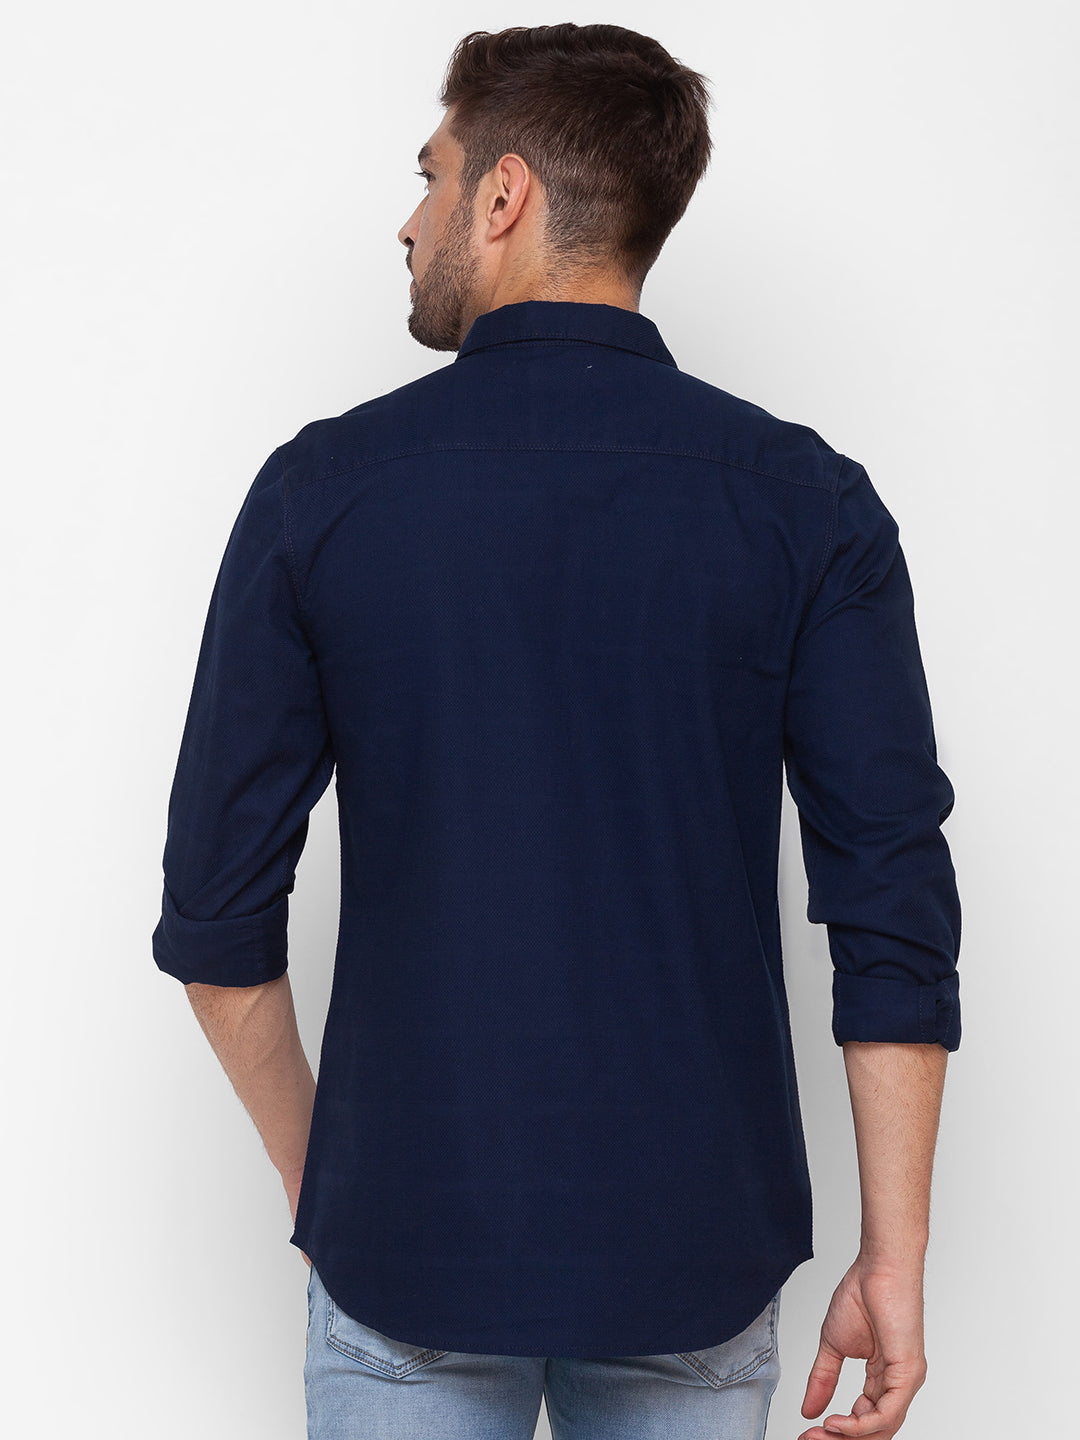 Spykar Dark Blue Cotton Full Sleeve Plain Shirt For Men